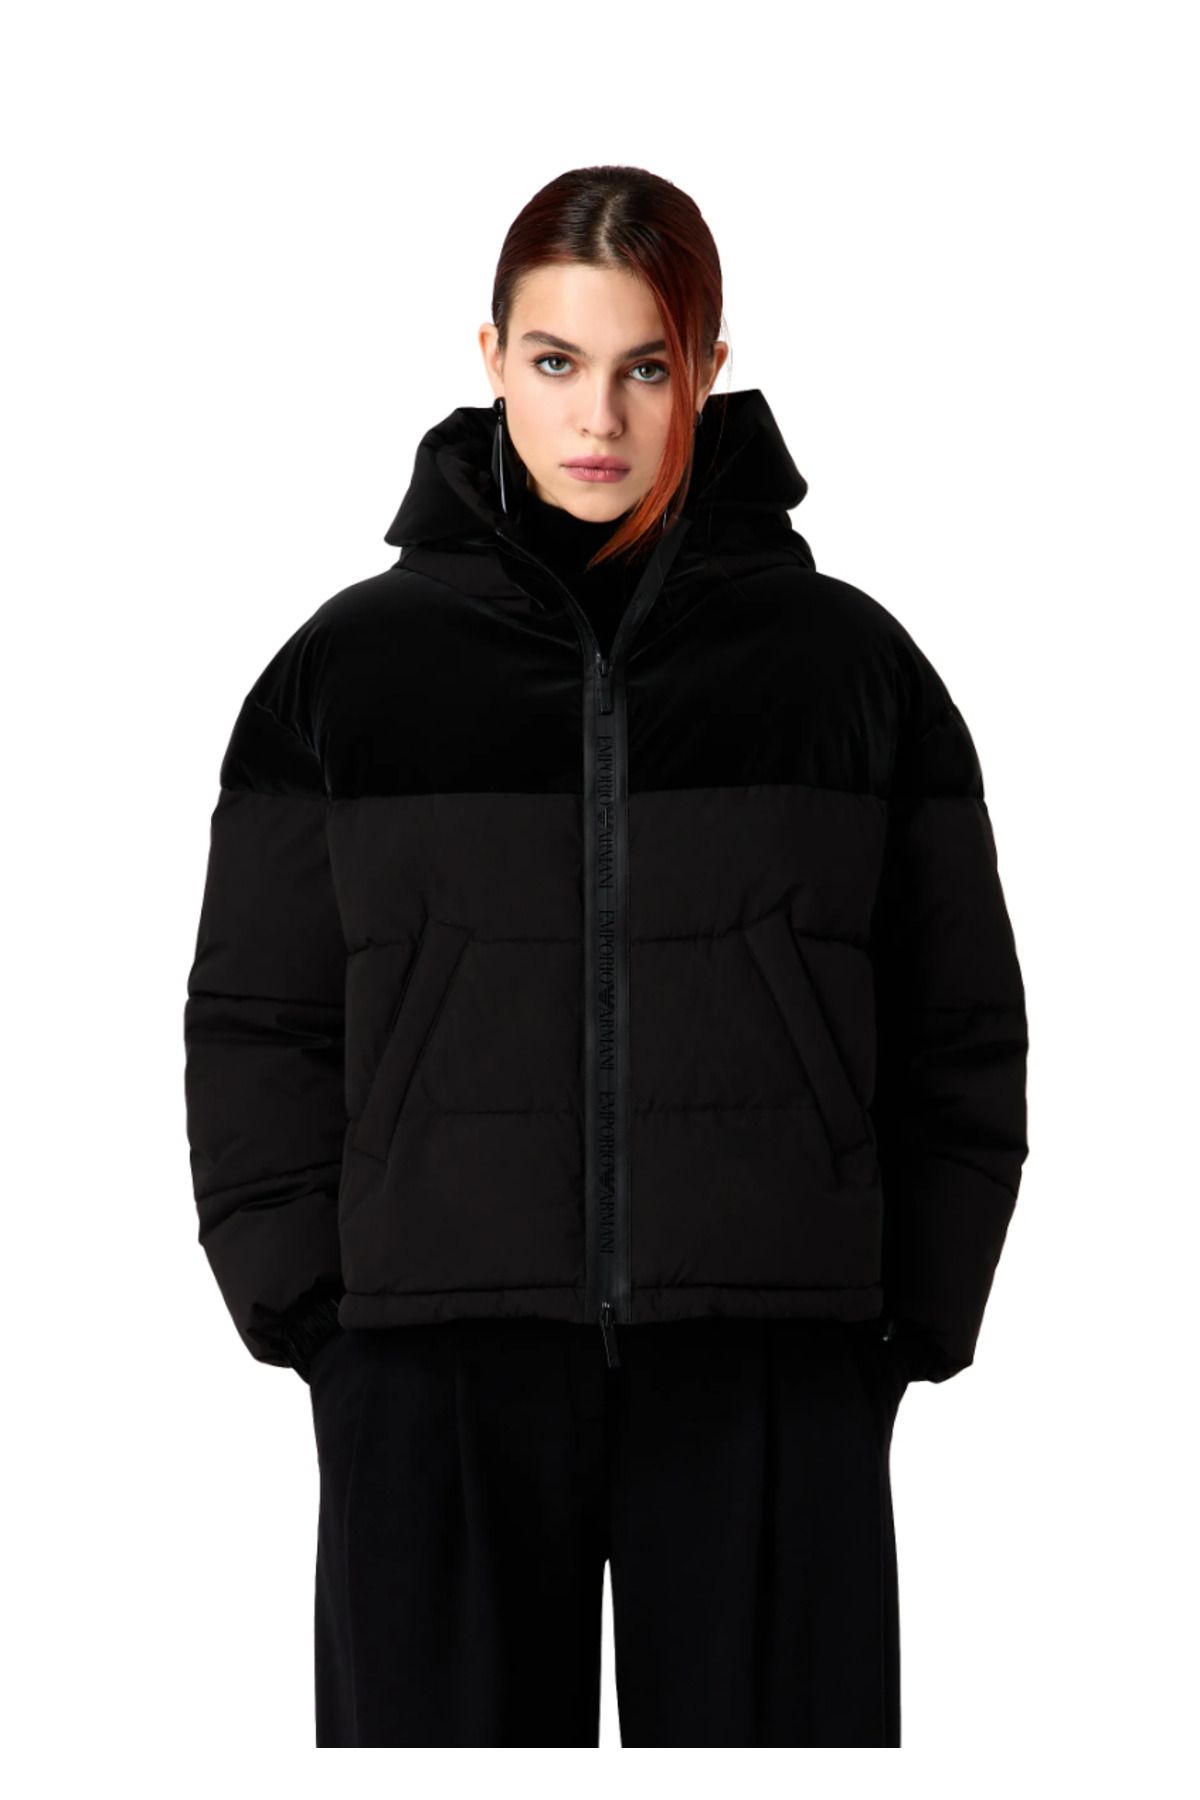 Emporio Armani Windproof Jacket With Hood and Logo Zip